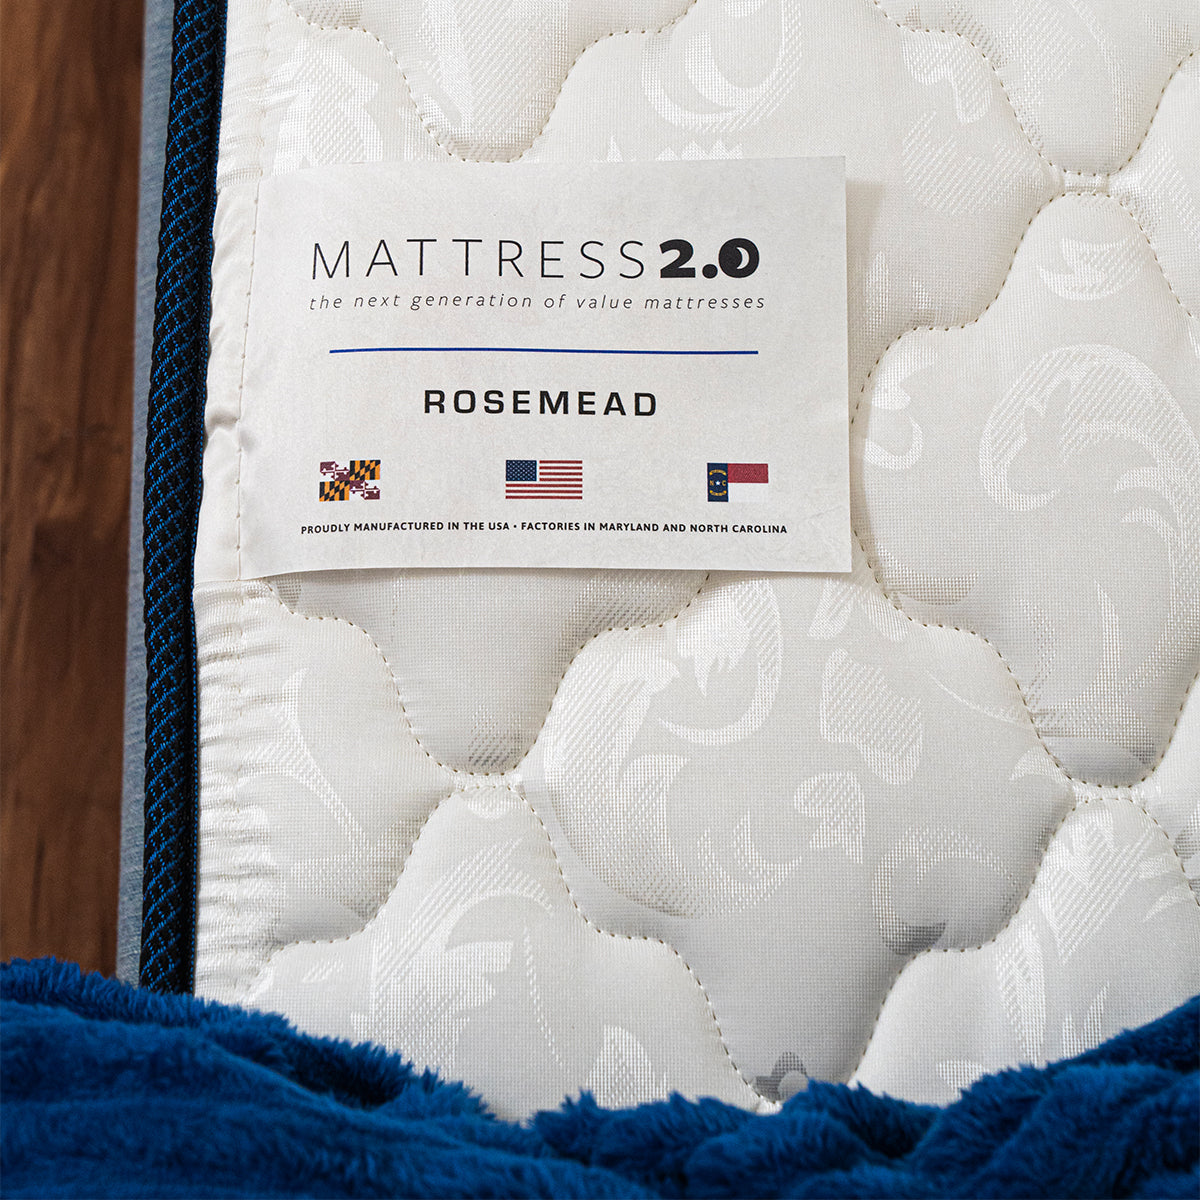 Mattress 2.0 Rosemead Firm Mattress Fabric and Manufacturer Tag Detail